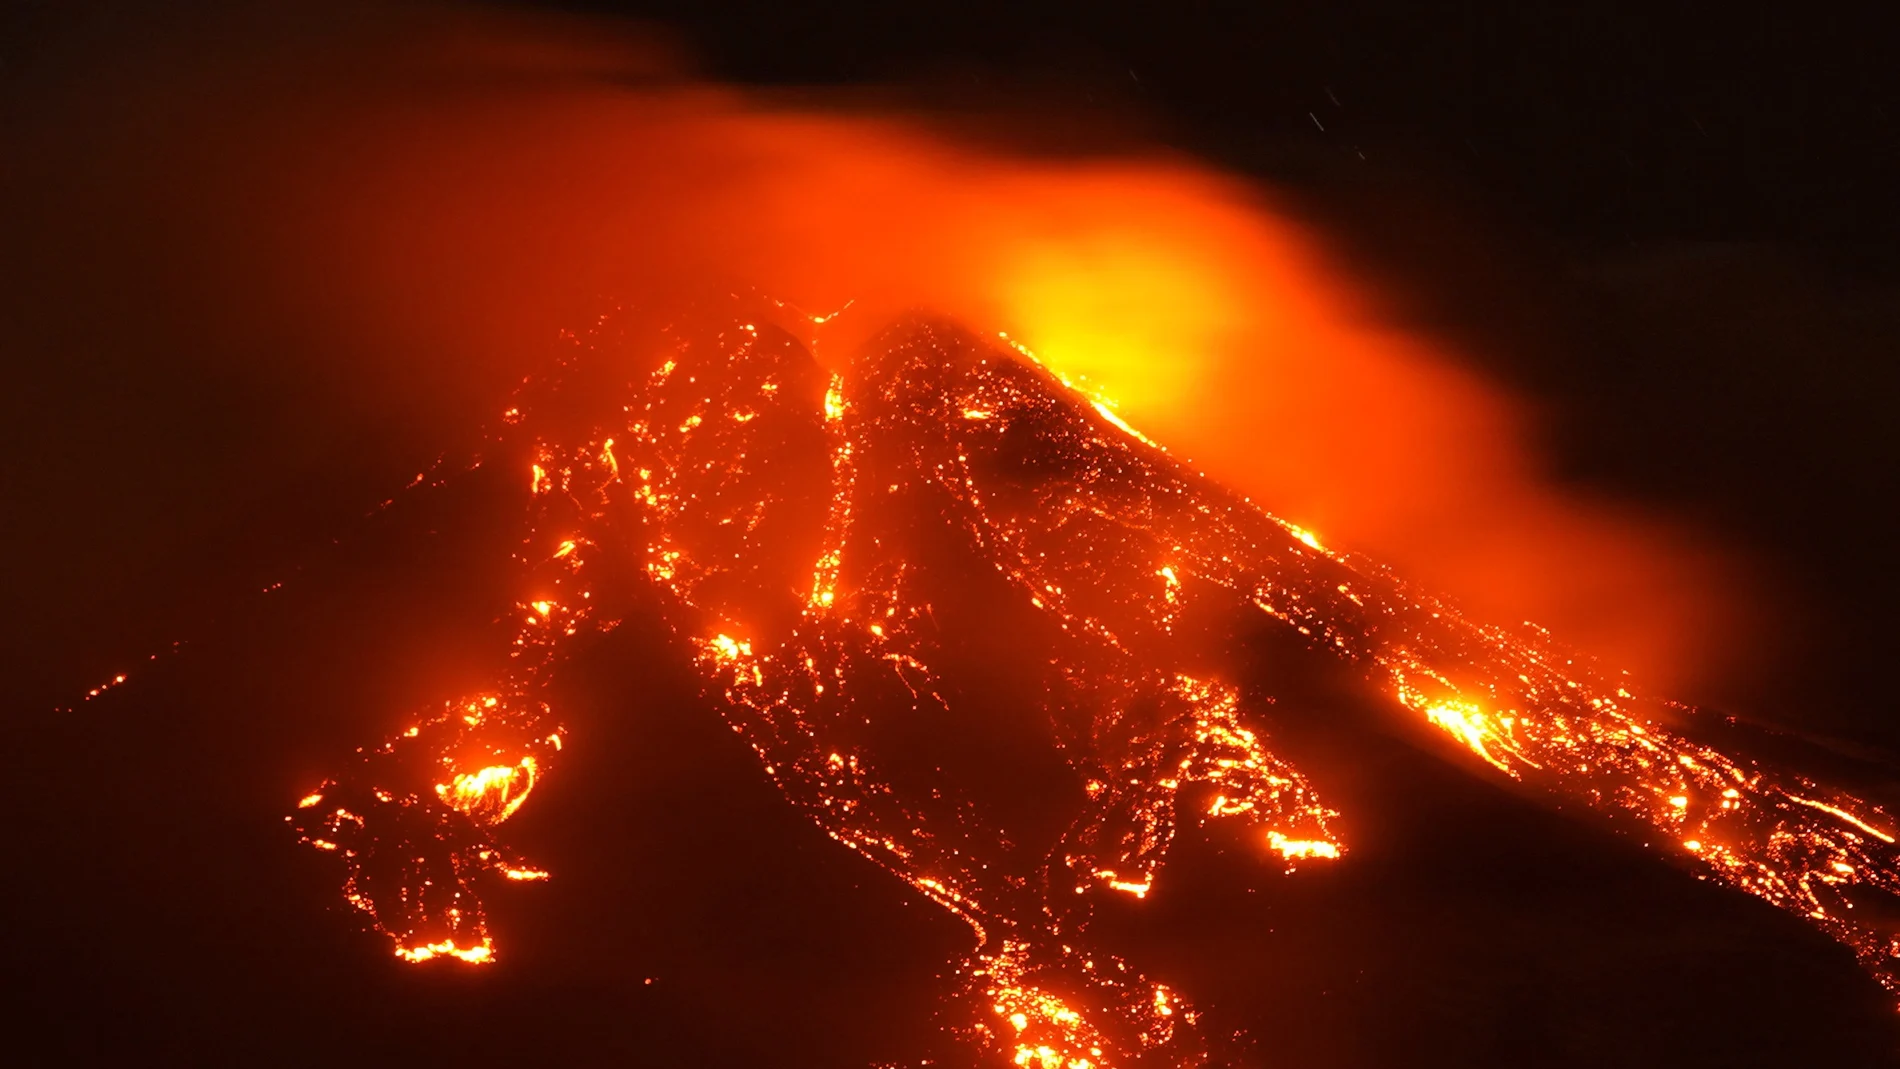 La primera vez que entró en erupción fue el 16 de febrero